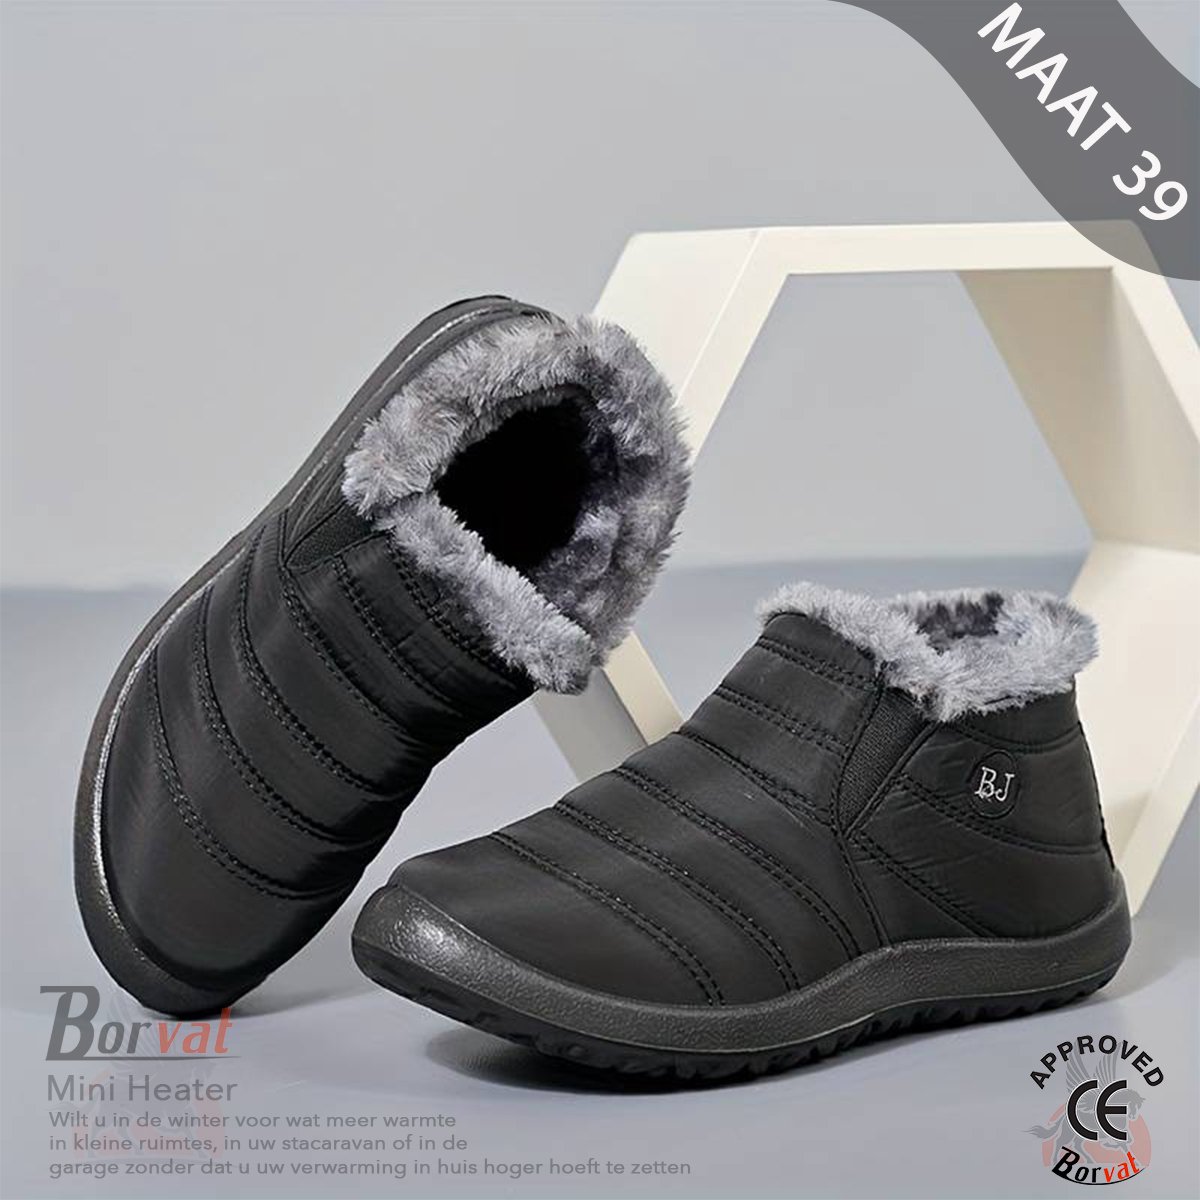 Borvat® - Unisex Schoenen - Winter Sneakers - Lichtgewicht Winterschoenen - Heren / Dames - Vrijetijdsschoenen Met Bont - Zwar - Maat 39 - Borvat®